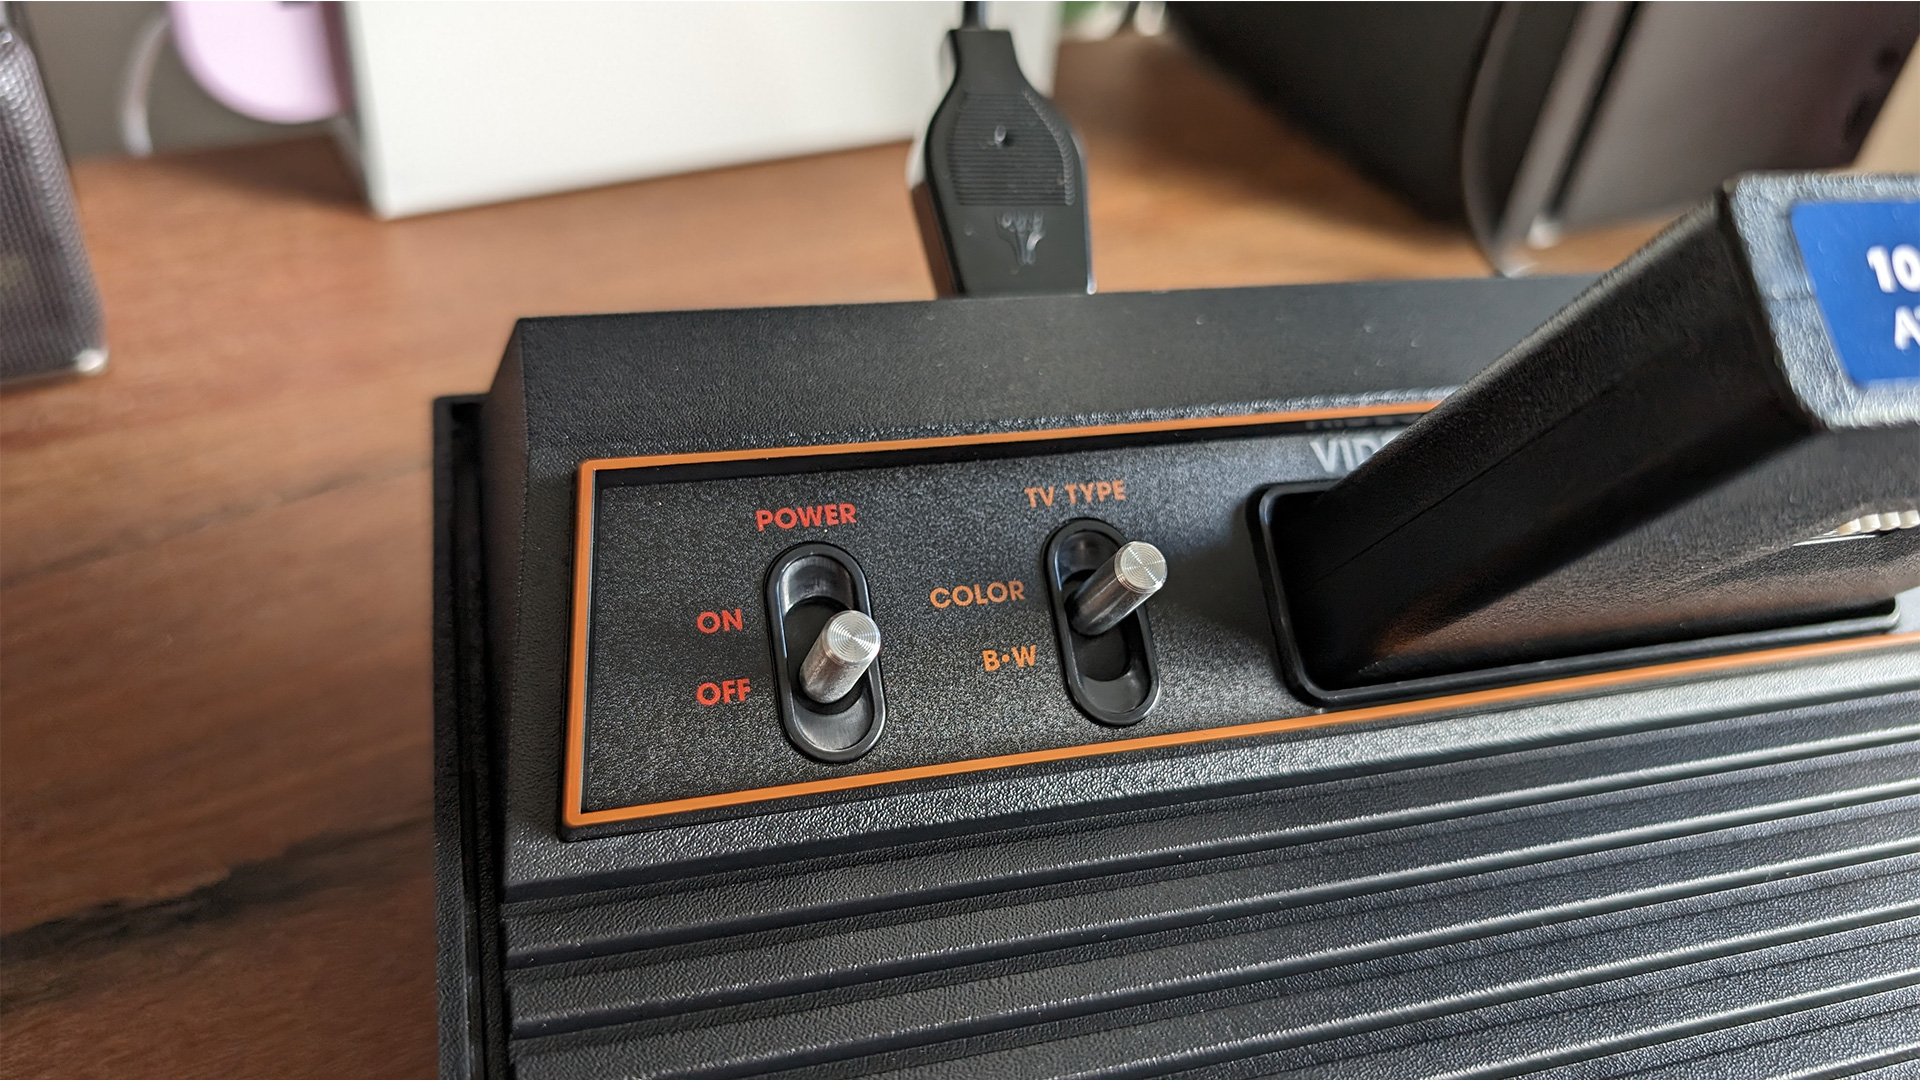 Atari 2600 Plus review